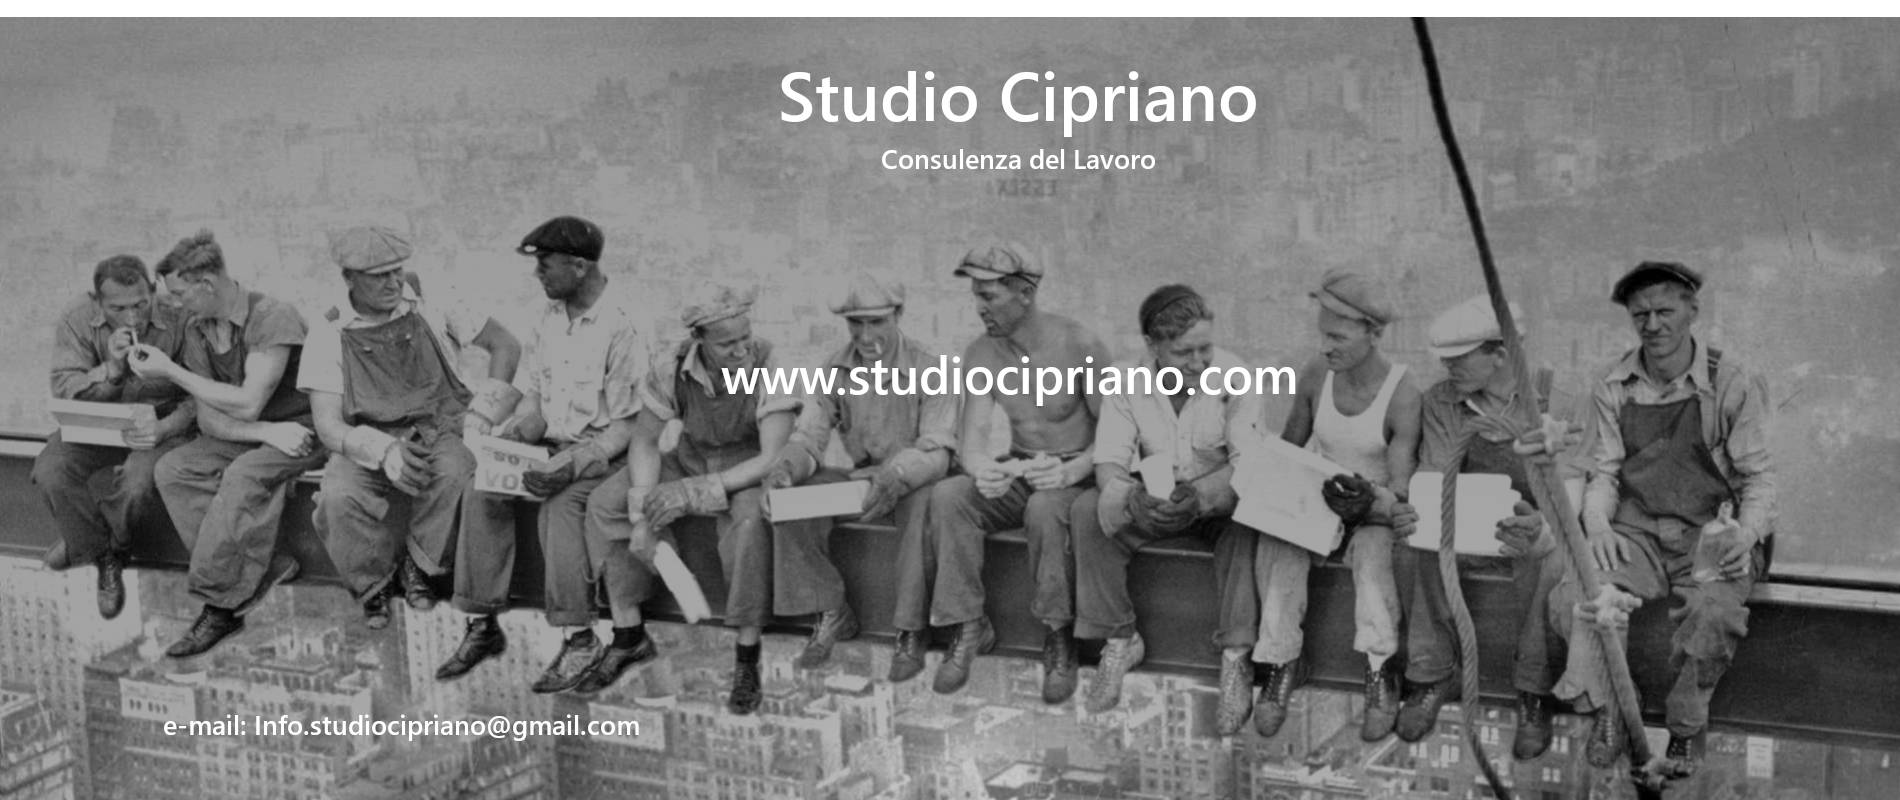 Studio Cipriano